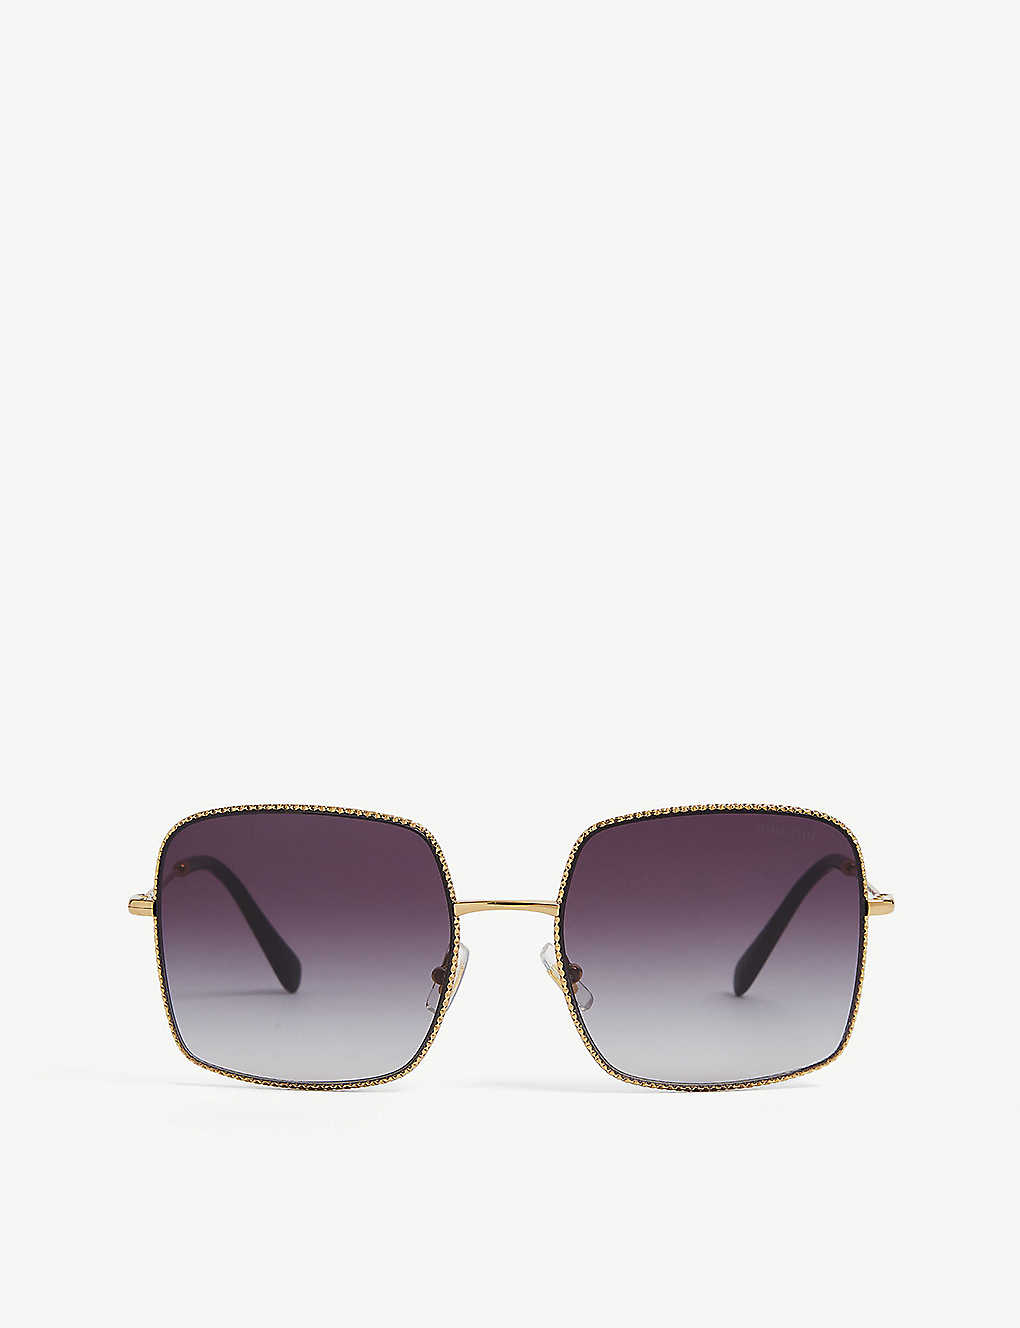 Miu Miu Womens Gold Mu61vs Square-frame Metal Sunglasses